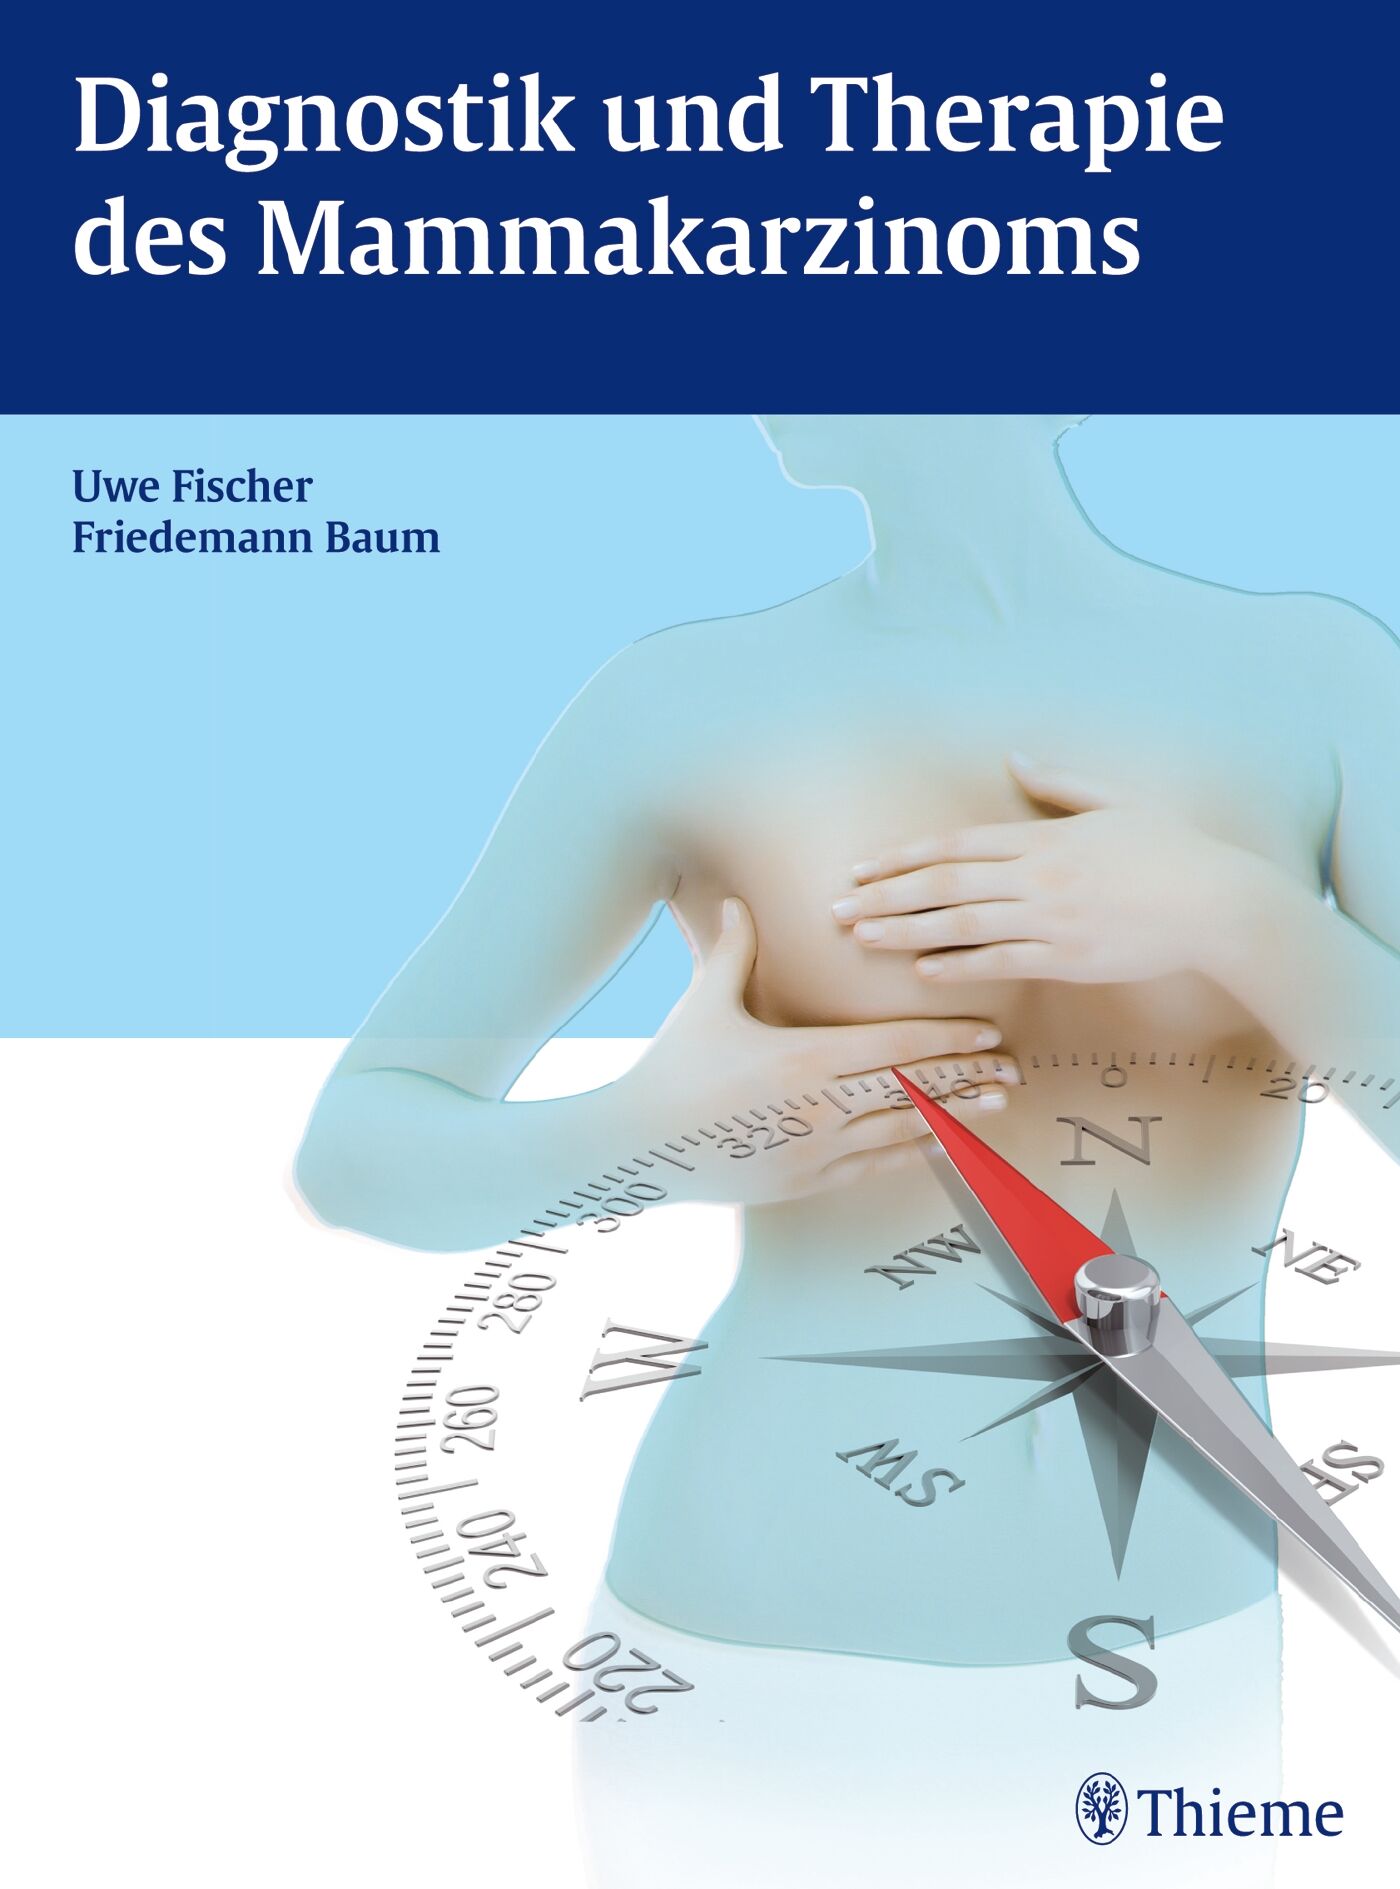 Diagnostik und Therapie des Mammakarzinoms, 9783131774613